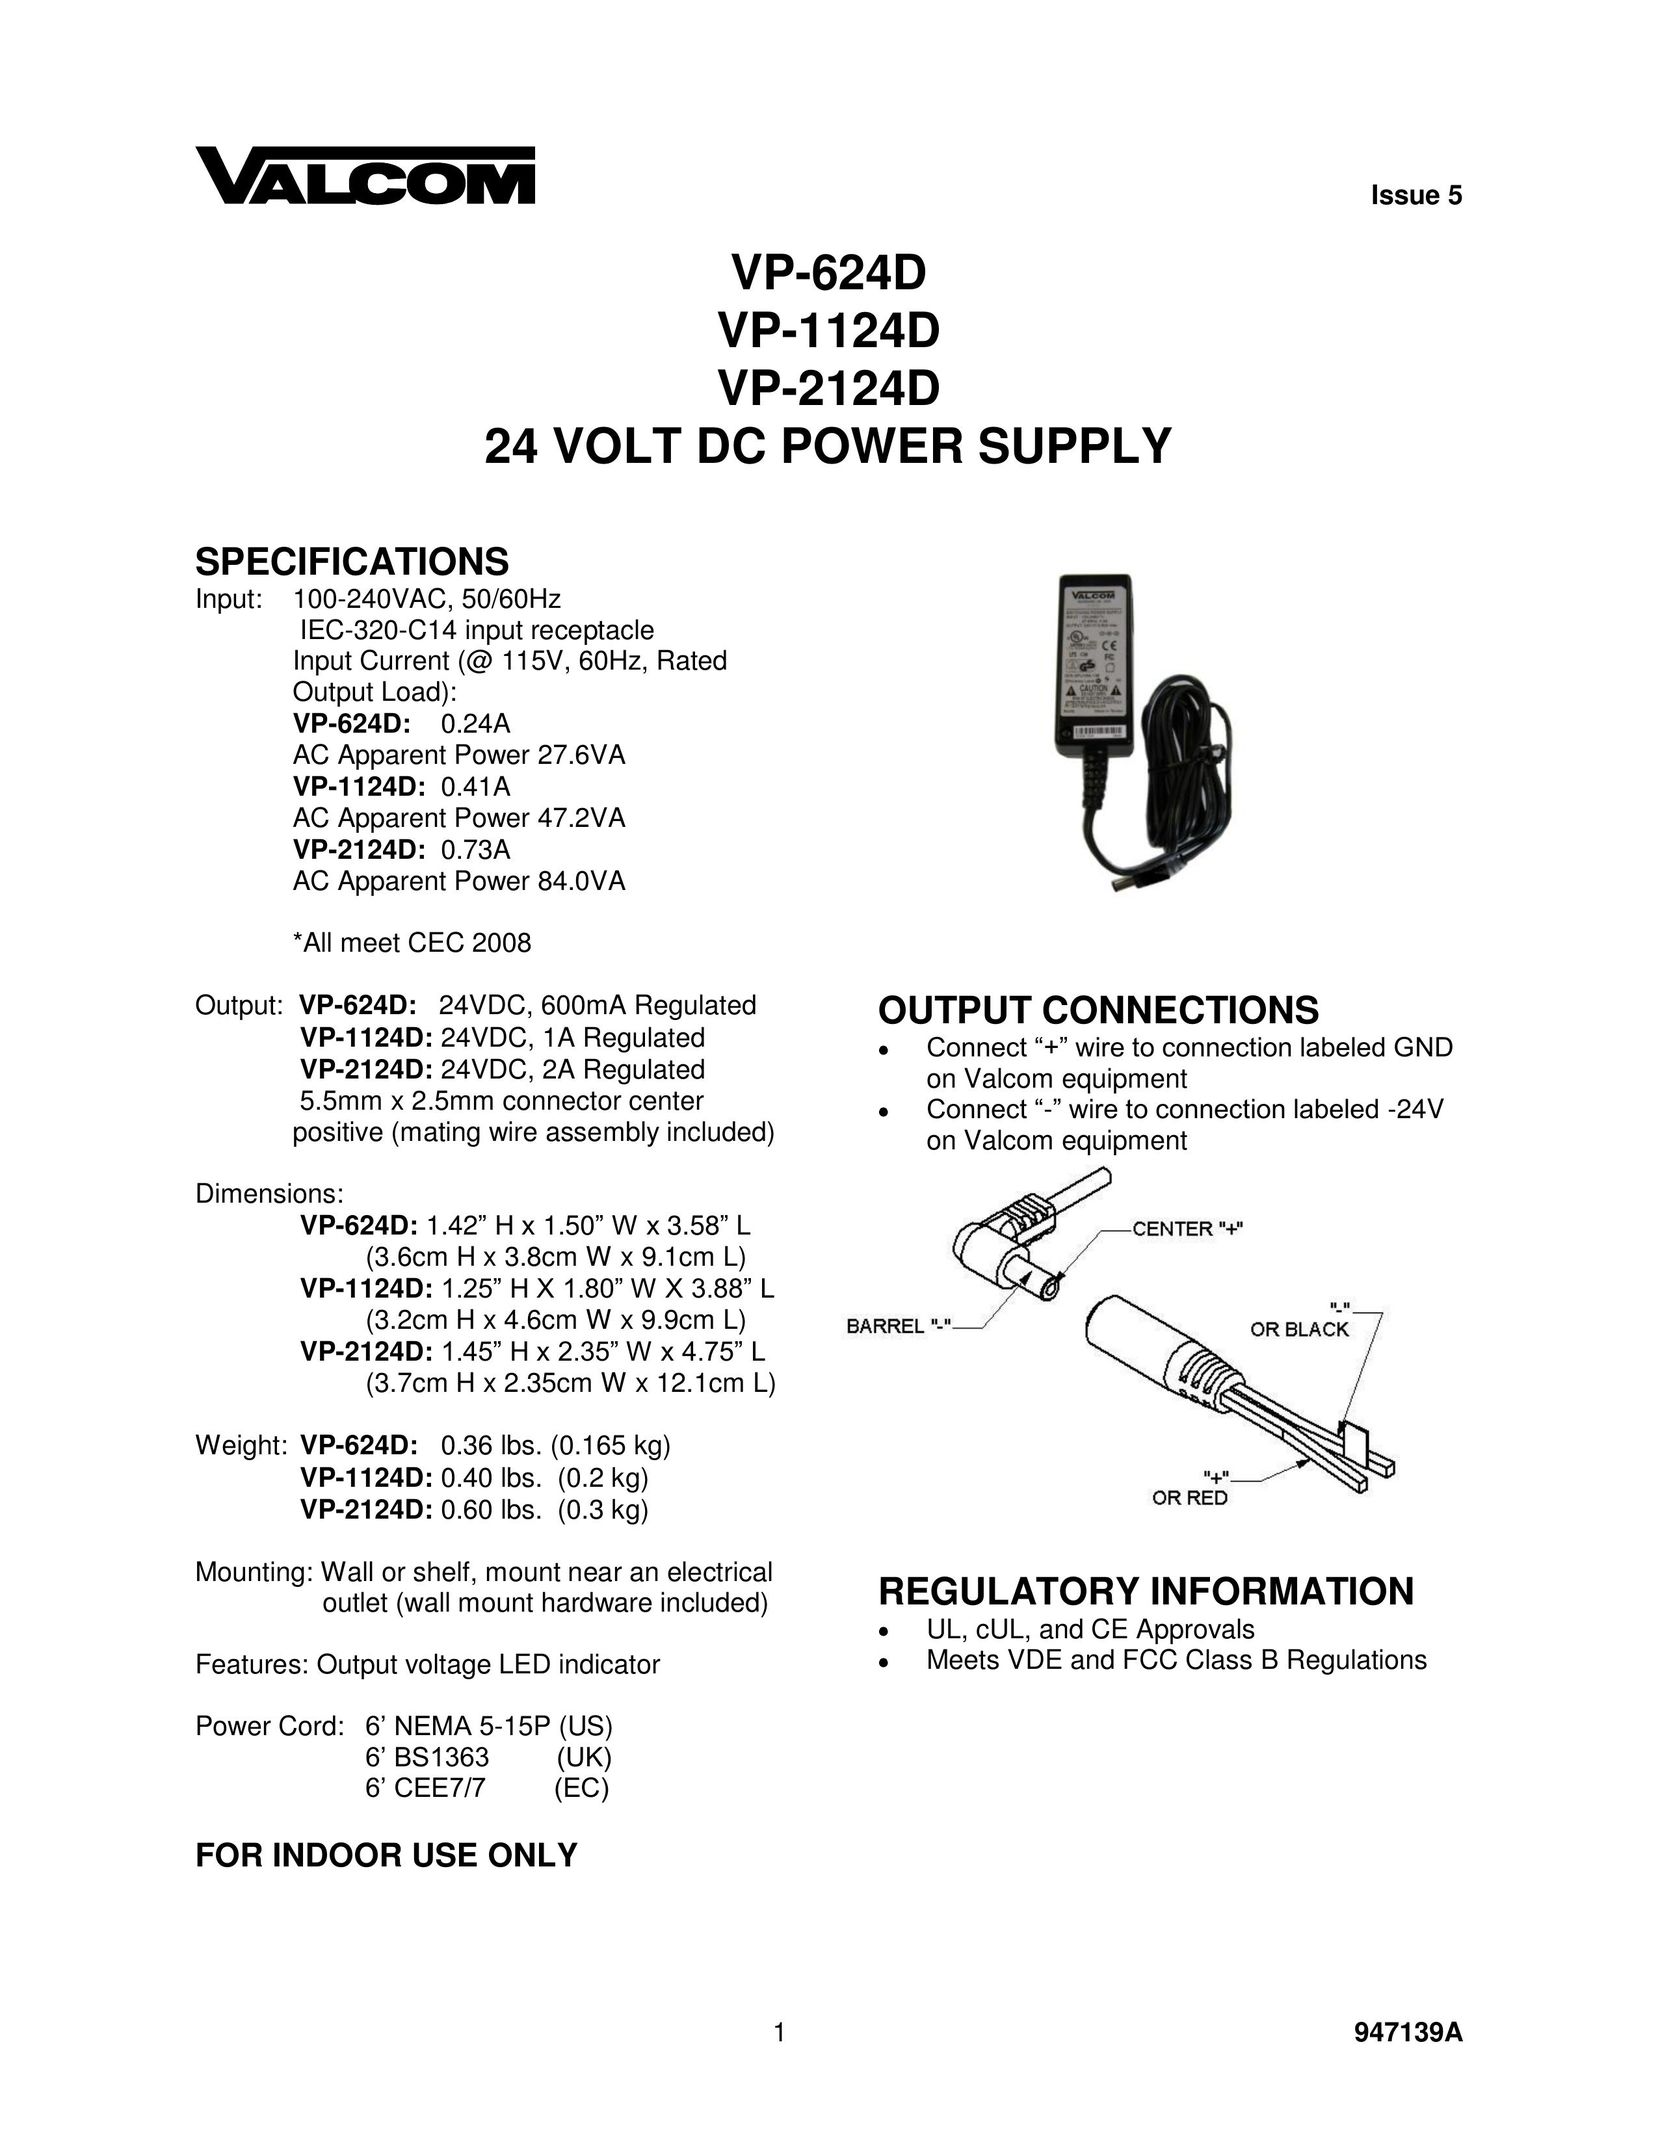 Valcom VP-1124D Power Supply User Manual